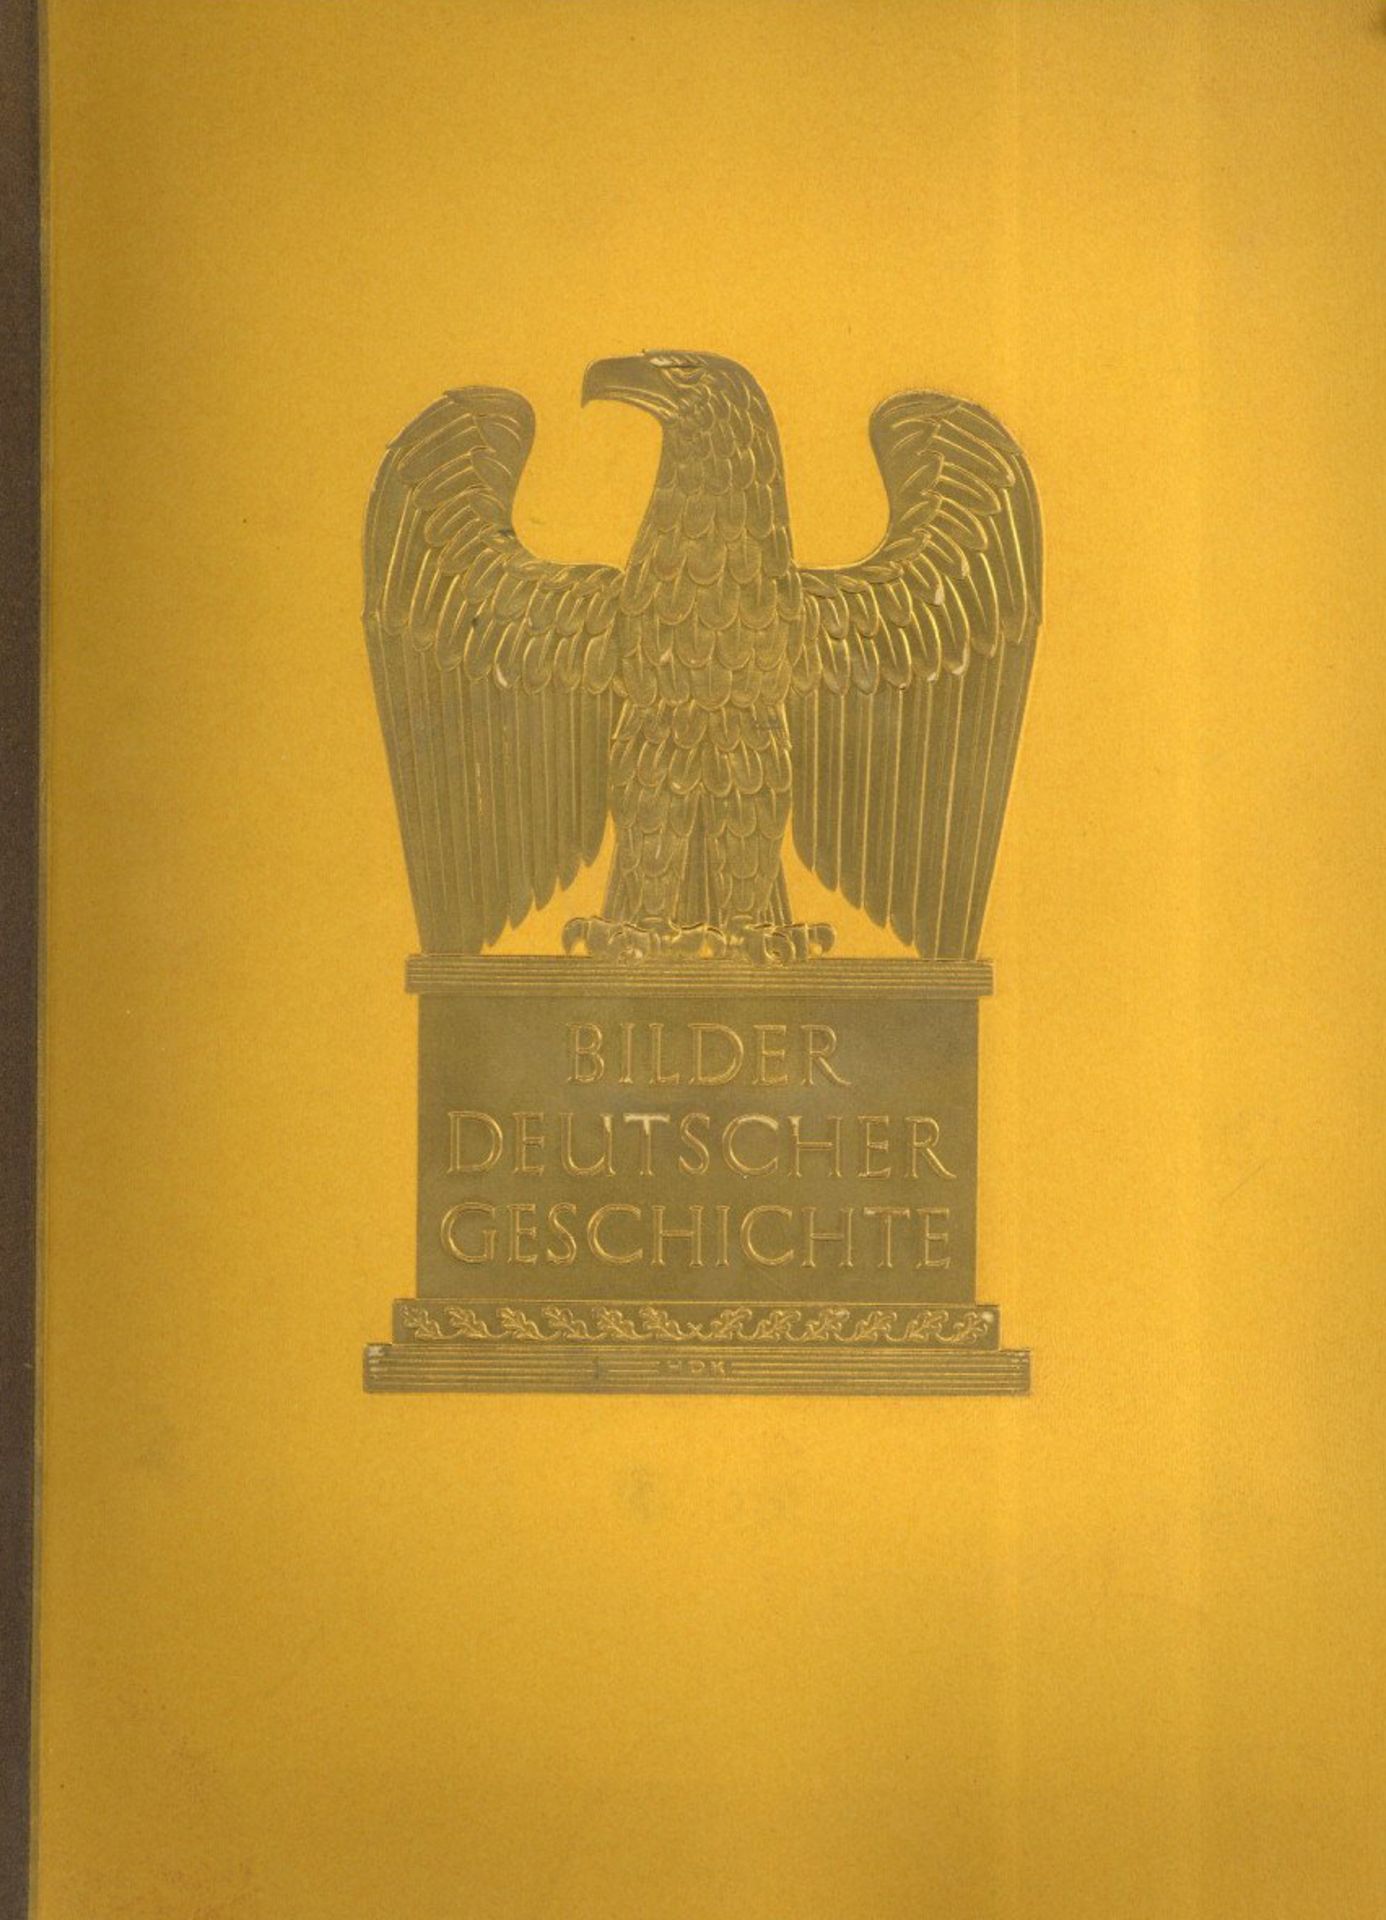 Sammelbild-Album Bilder Deutscher Geschichte hrsg. Zigaretten Bilderdienst Hamburg Bahrenfeld 1936